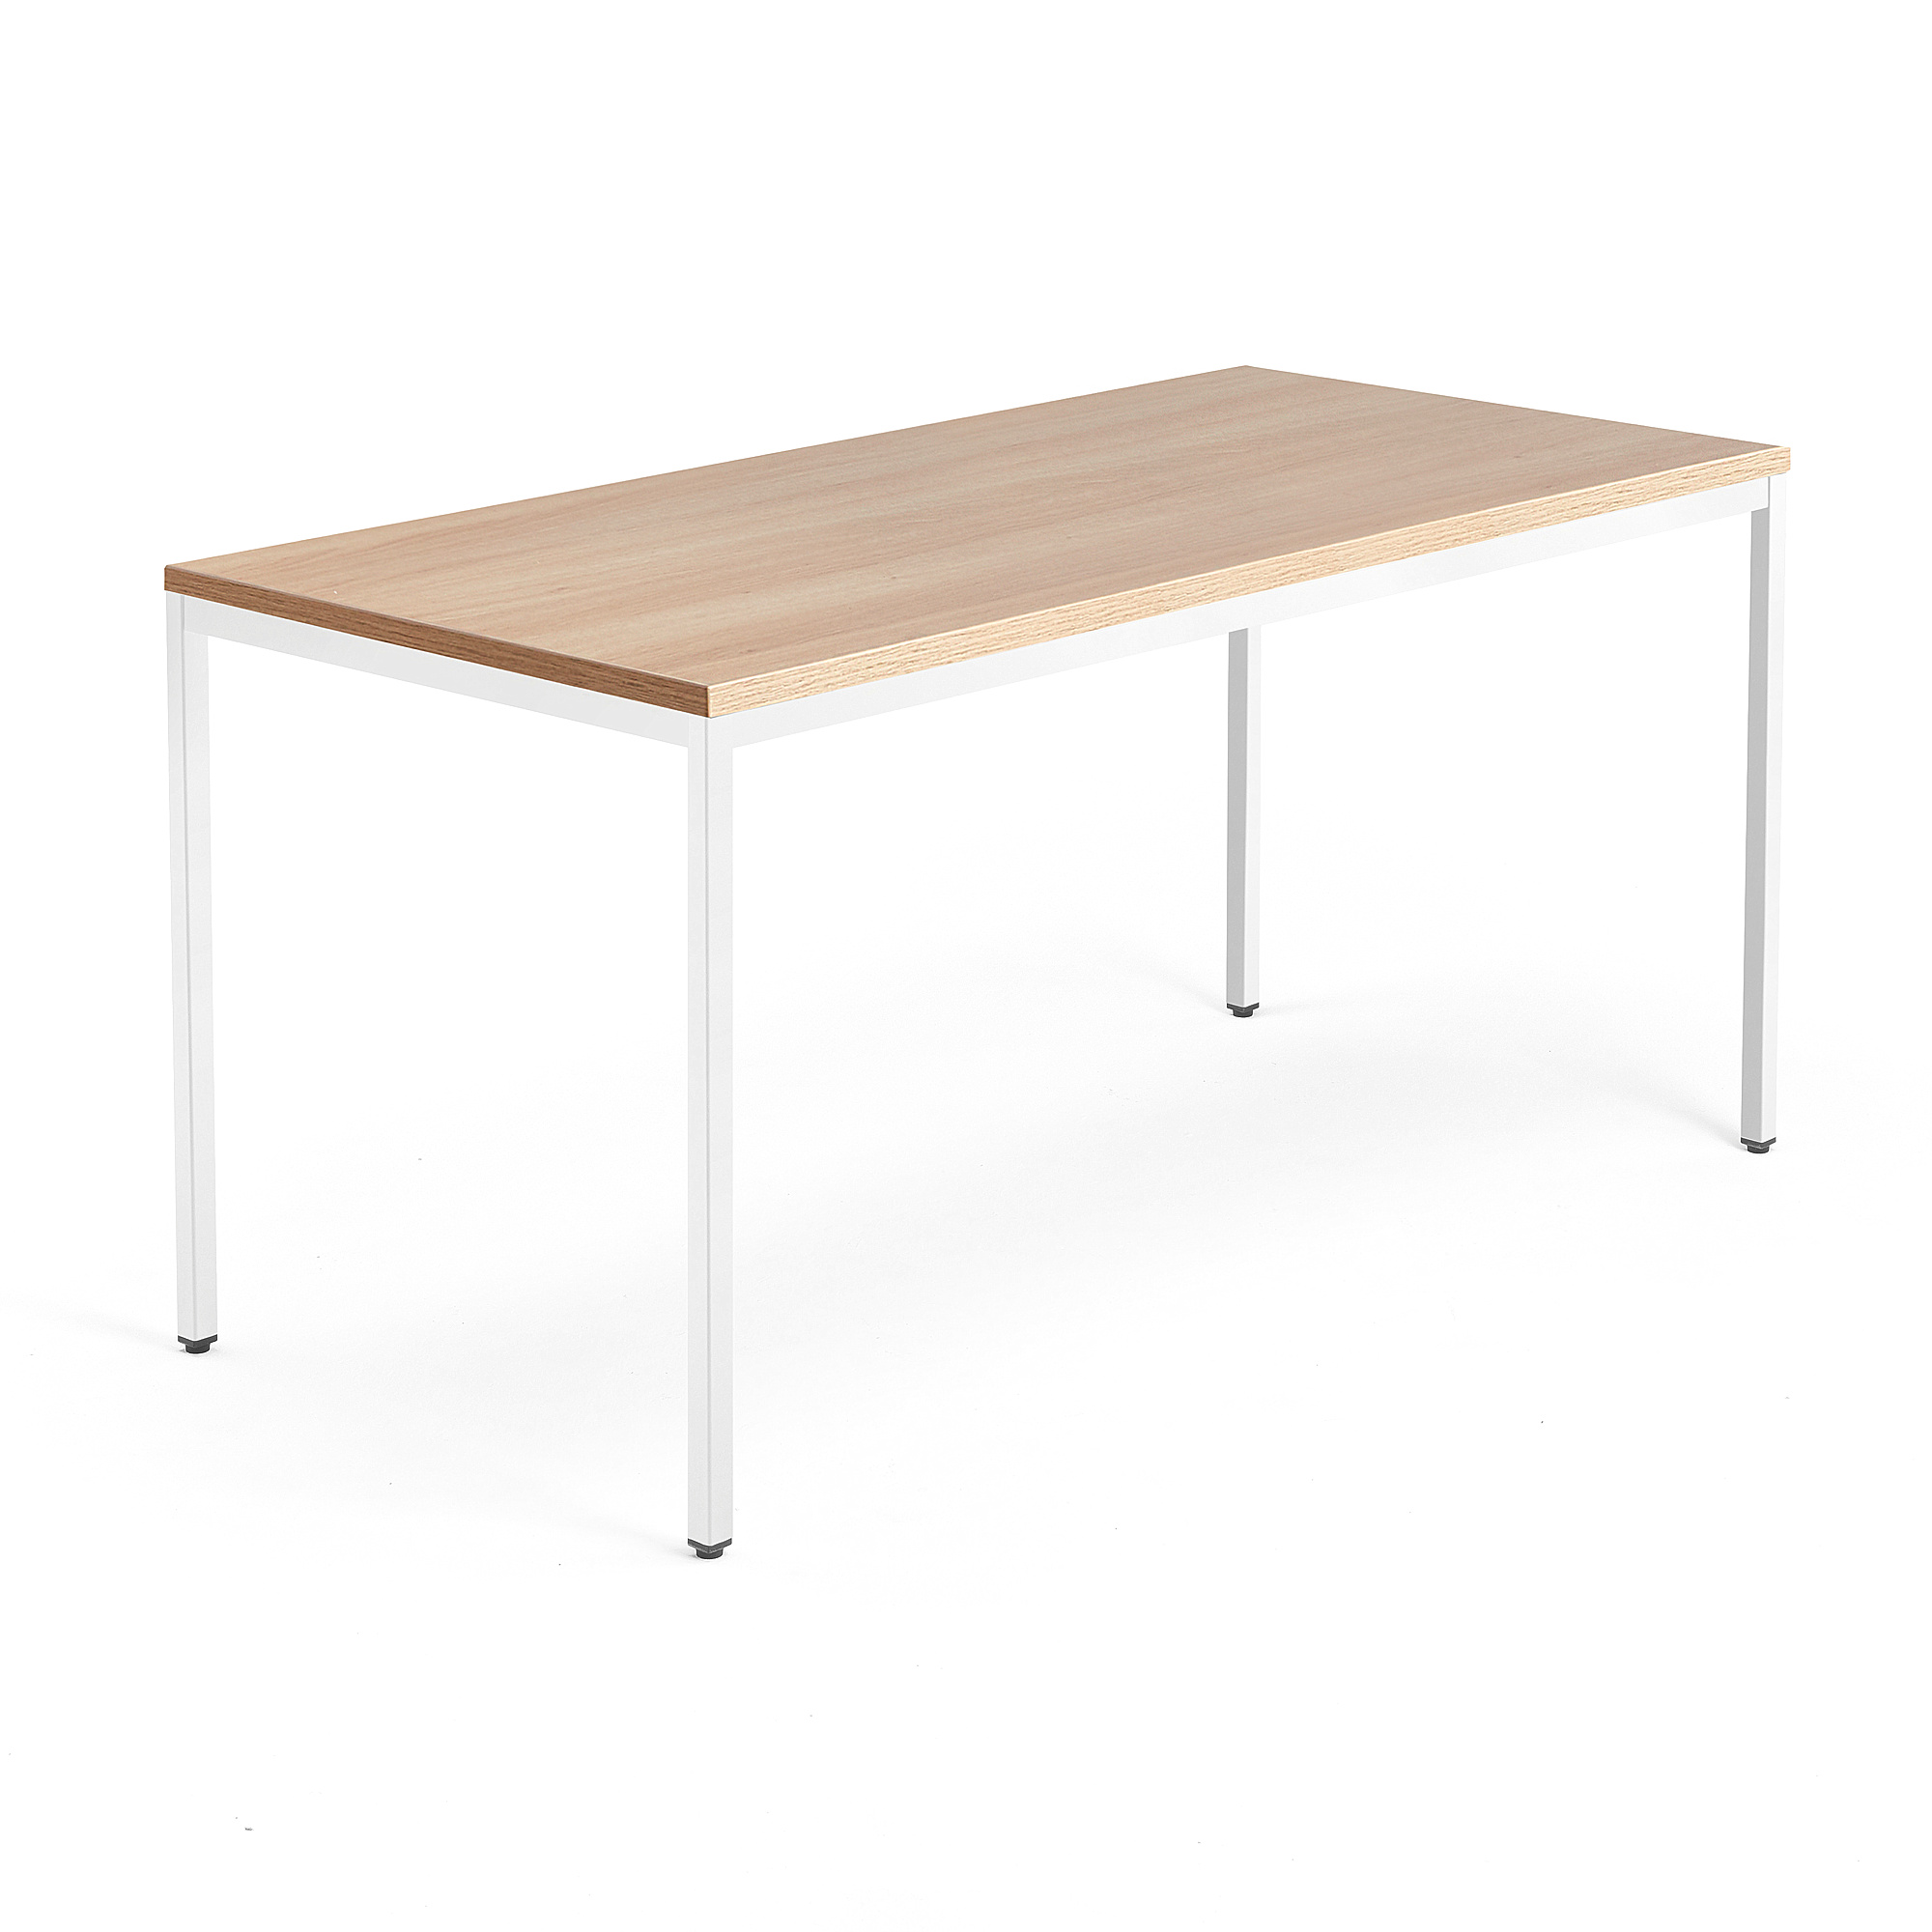 Jednací stůl QBUS, 4 nohy, 1600x800 mm, bílý rám, dub